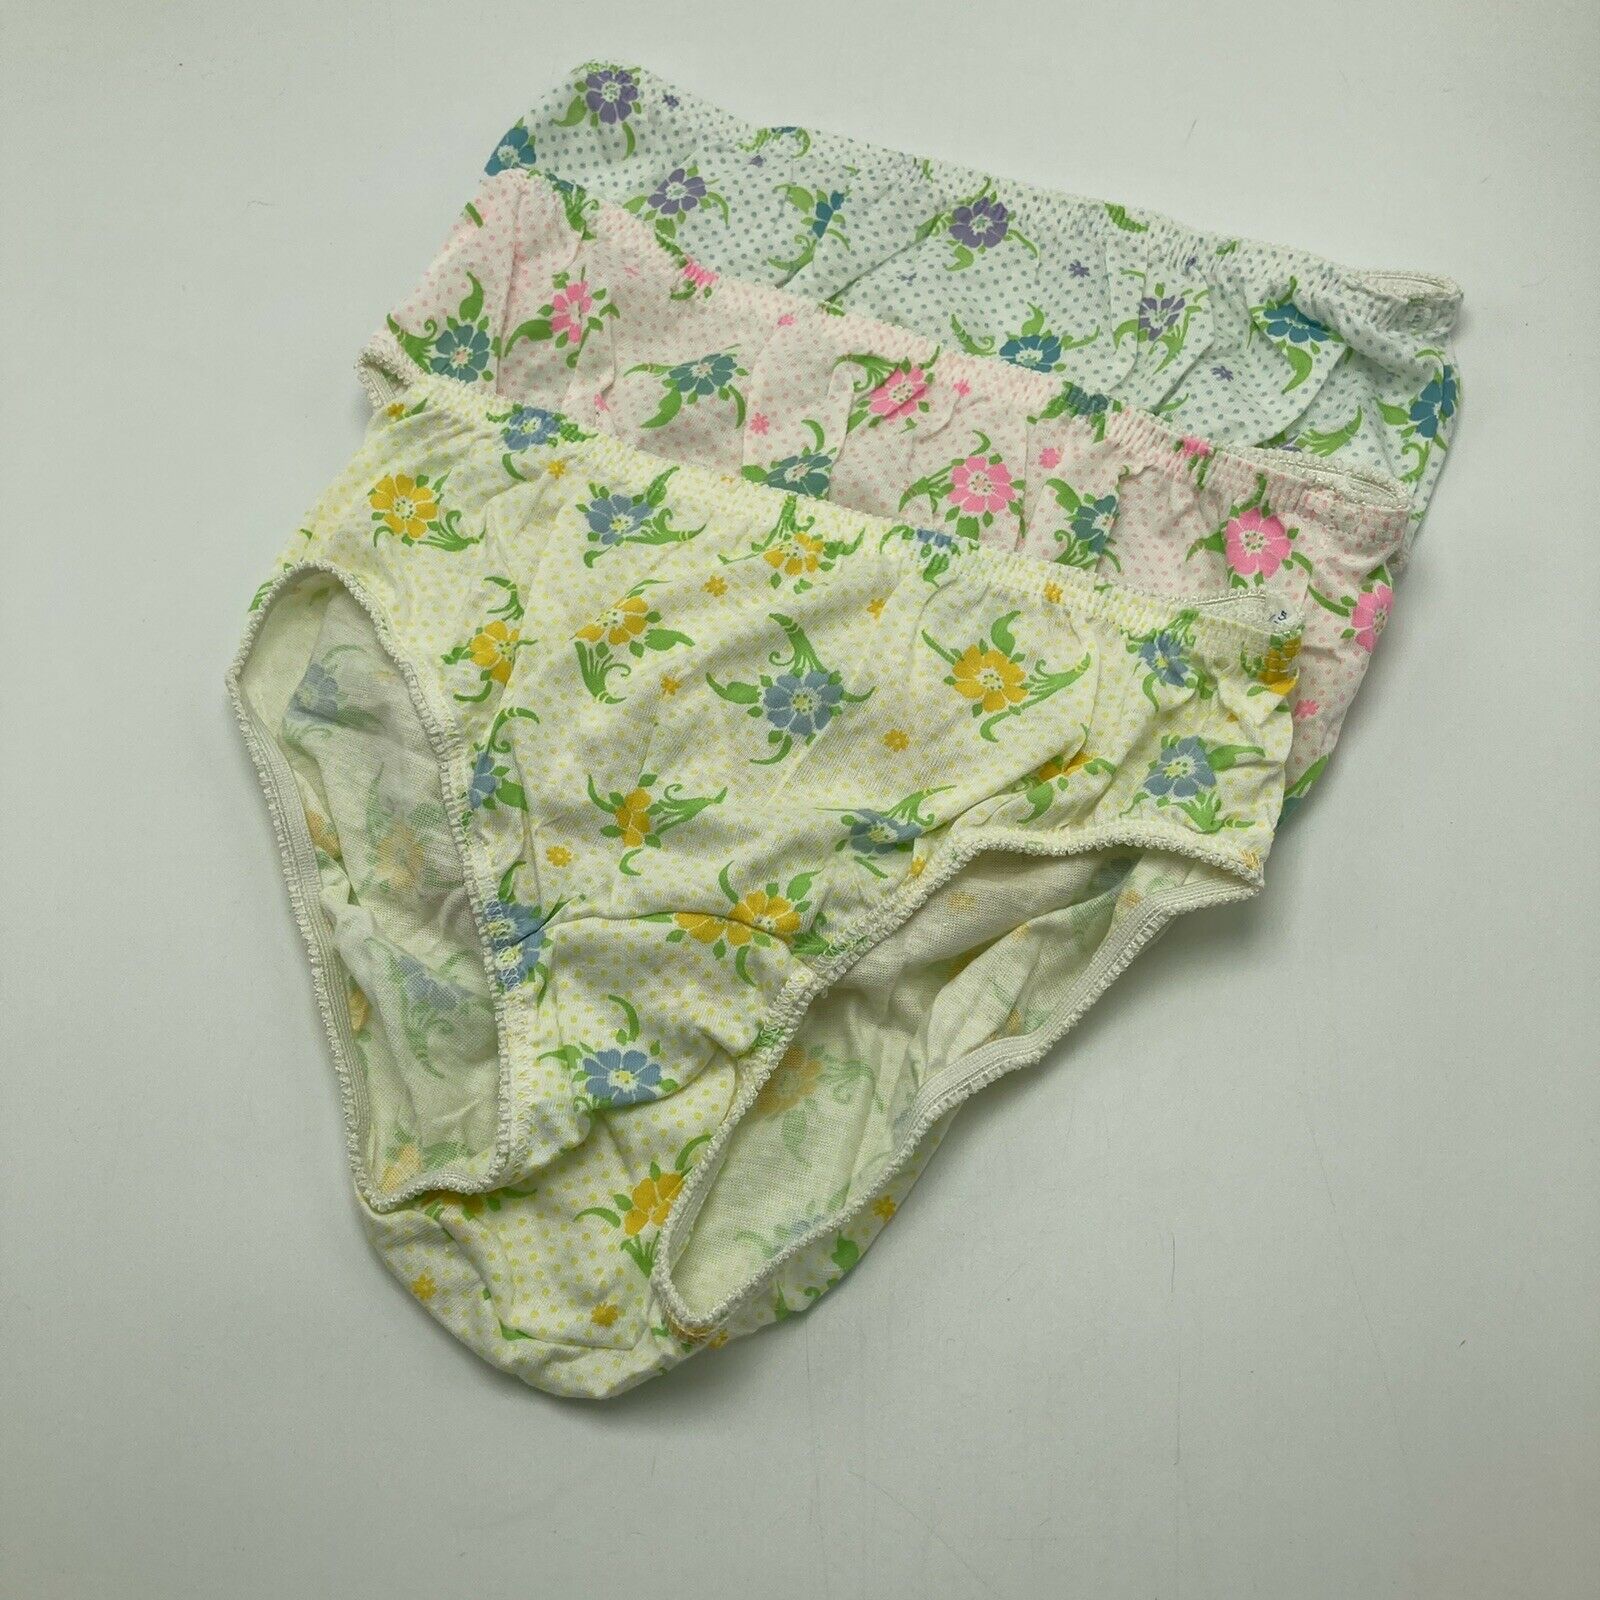 Vintage Carters Spanky Pants Briefs Underwear Sz 5 Floral Cotton 3 Pair Panties